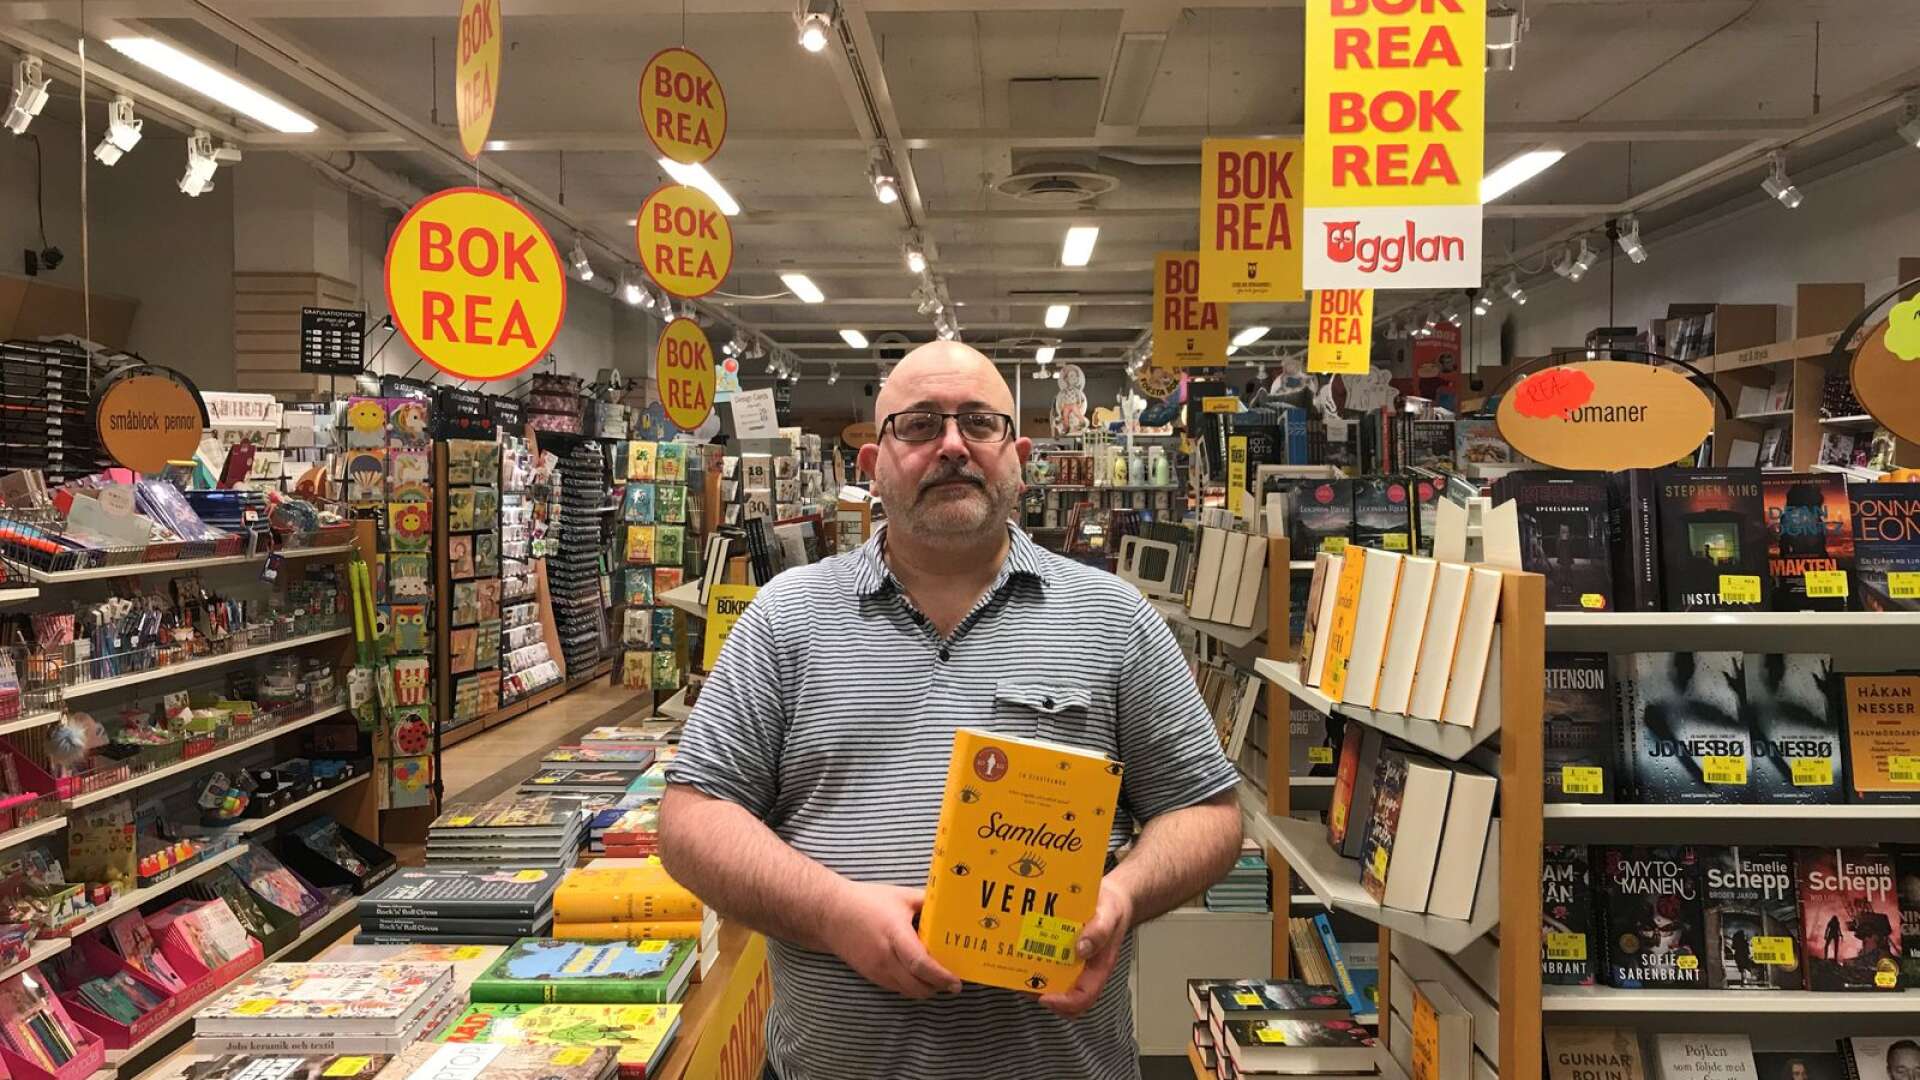 Jürgen Picha med boken ”Samlade Verk”, som han hoppas säljer bra under bokrean.